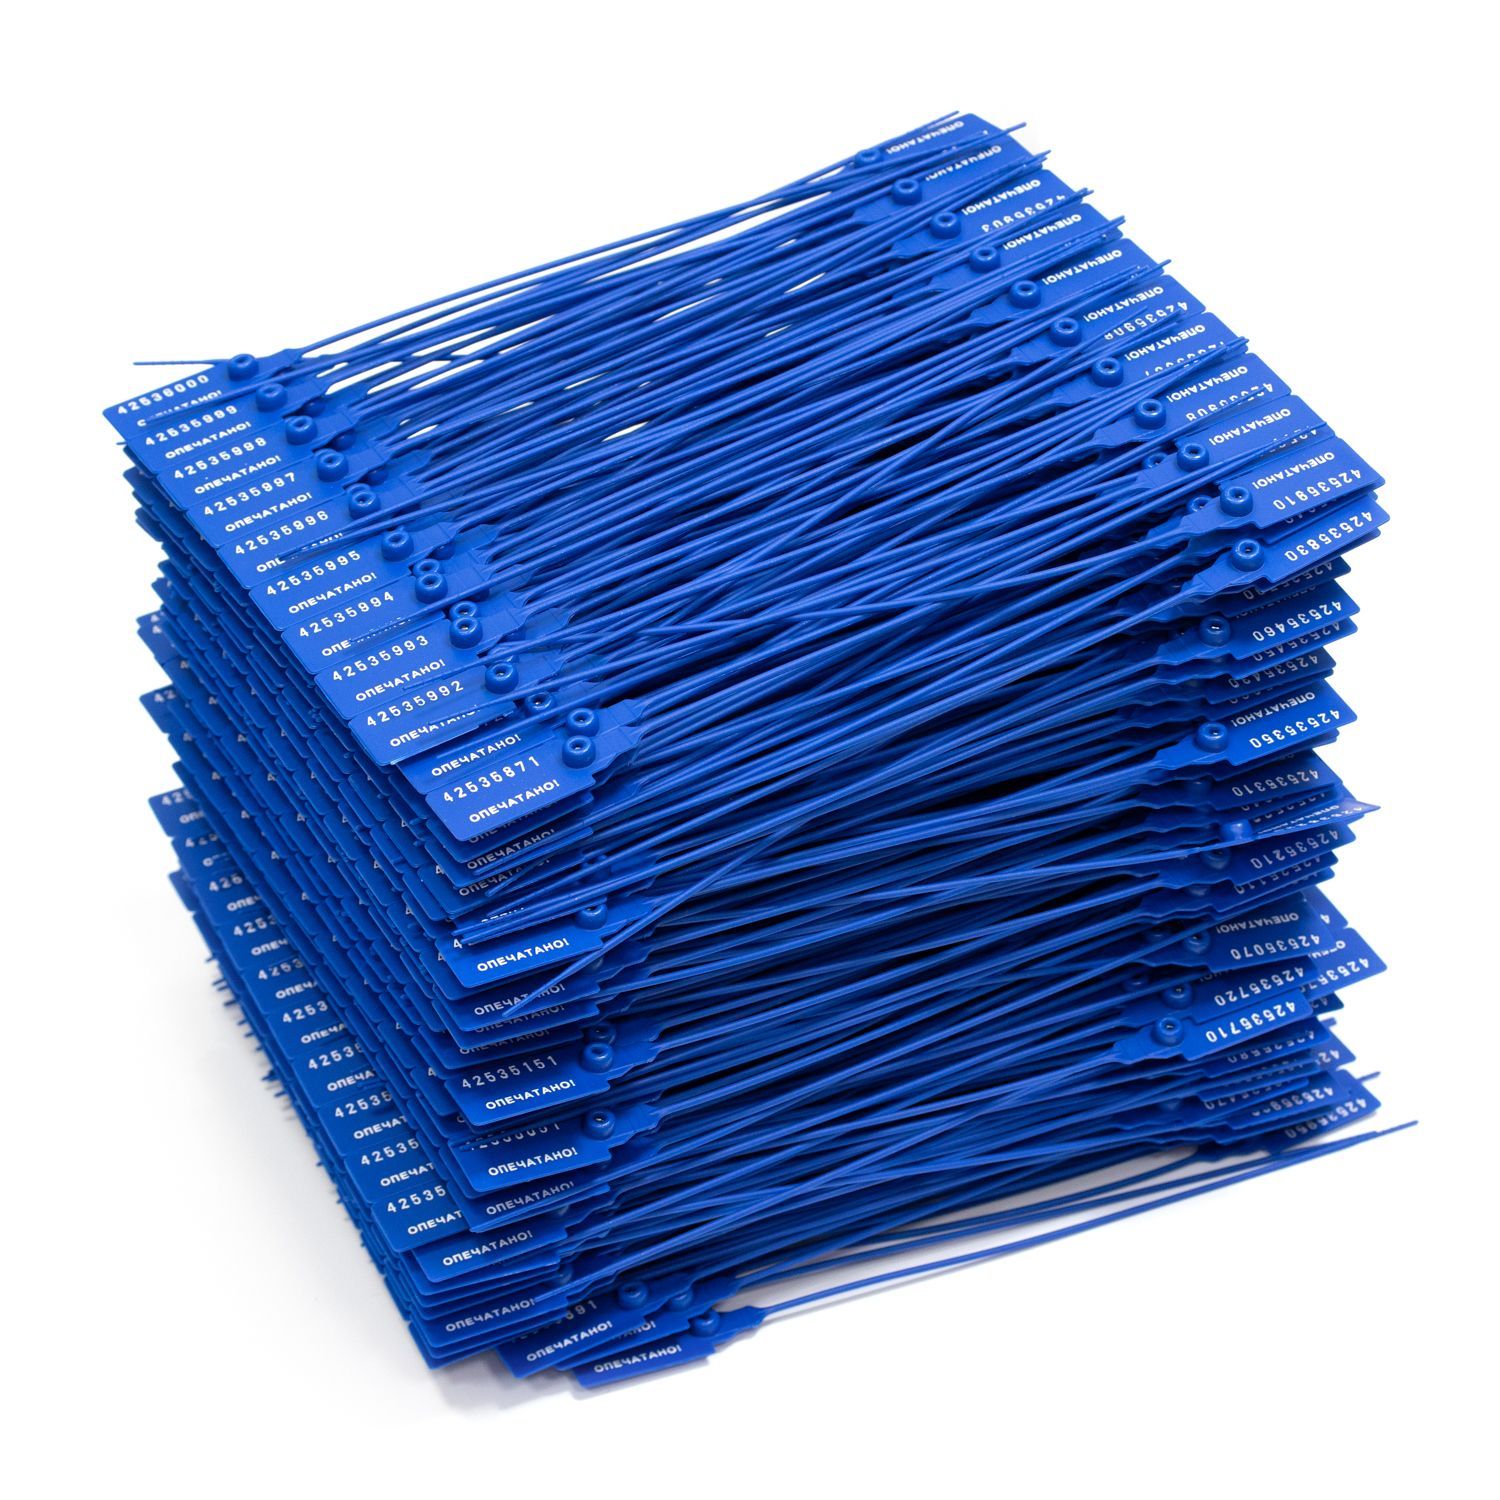 Пломба универсальная номерная, Надежные пломбы, 220 мм, синяя, 500 штук